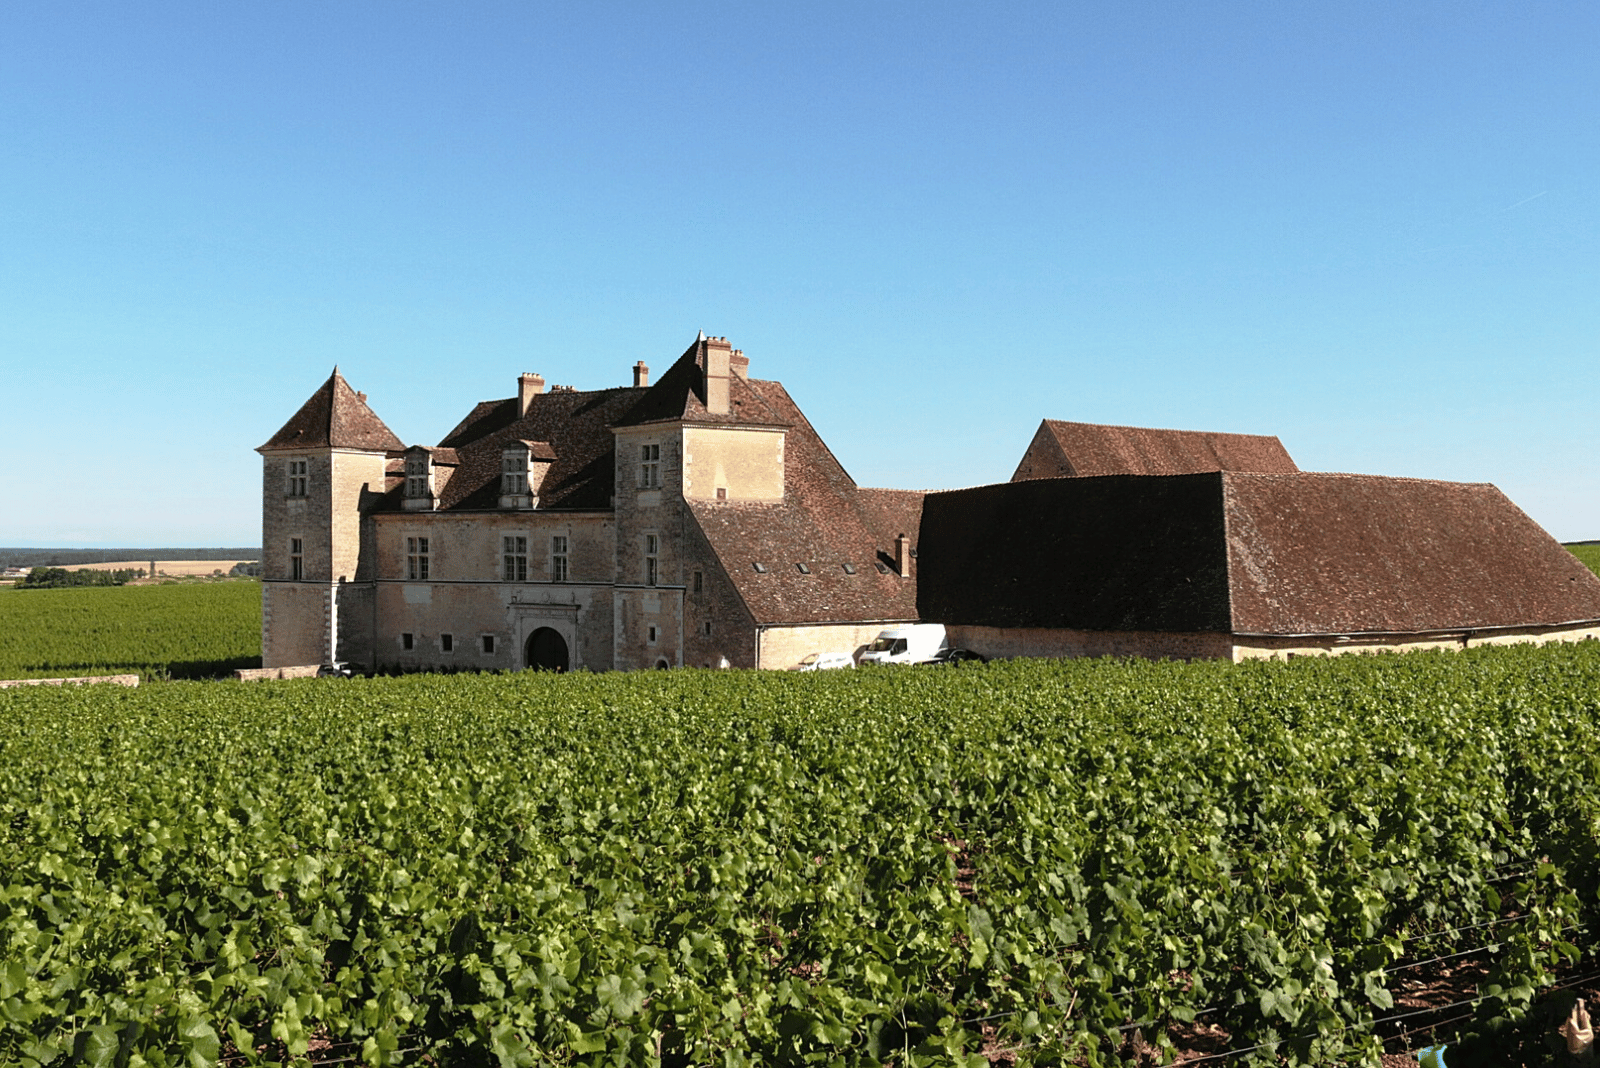 Cheateau de Close de Vougeot, Burgundy